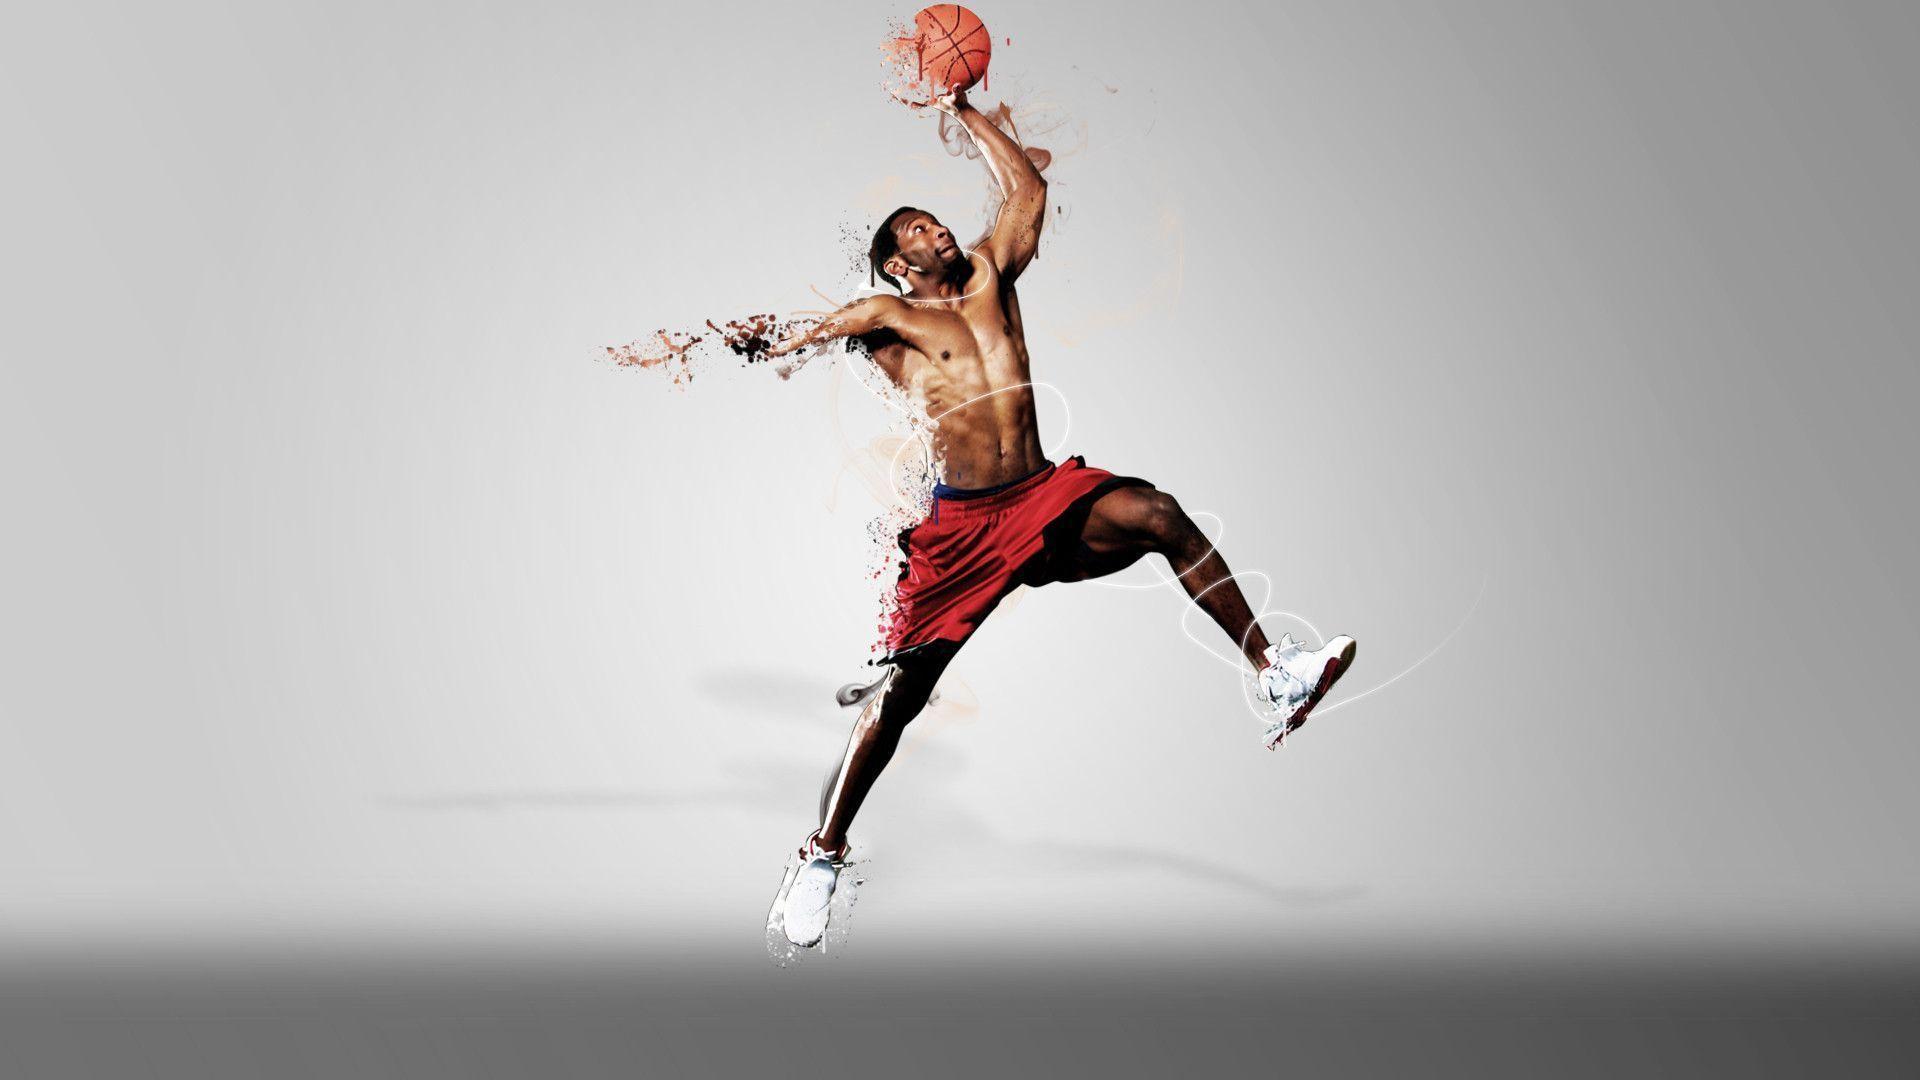 Awesome NBA Sports Player Image HD Wallpaper. HQ Desktop